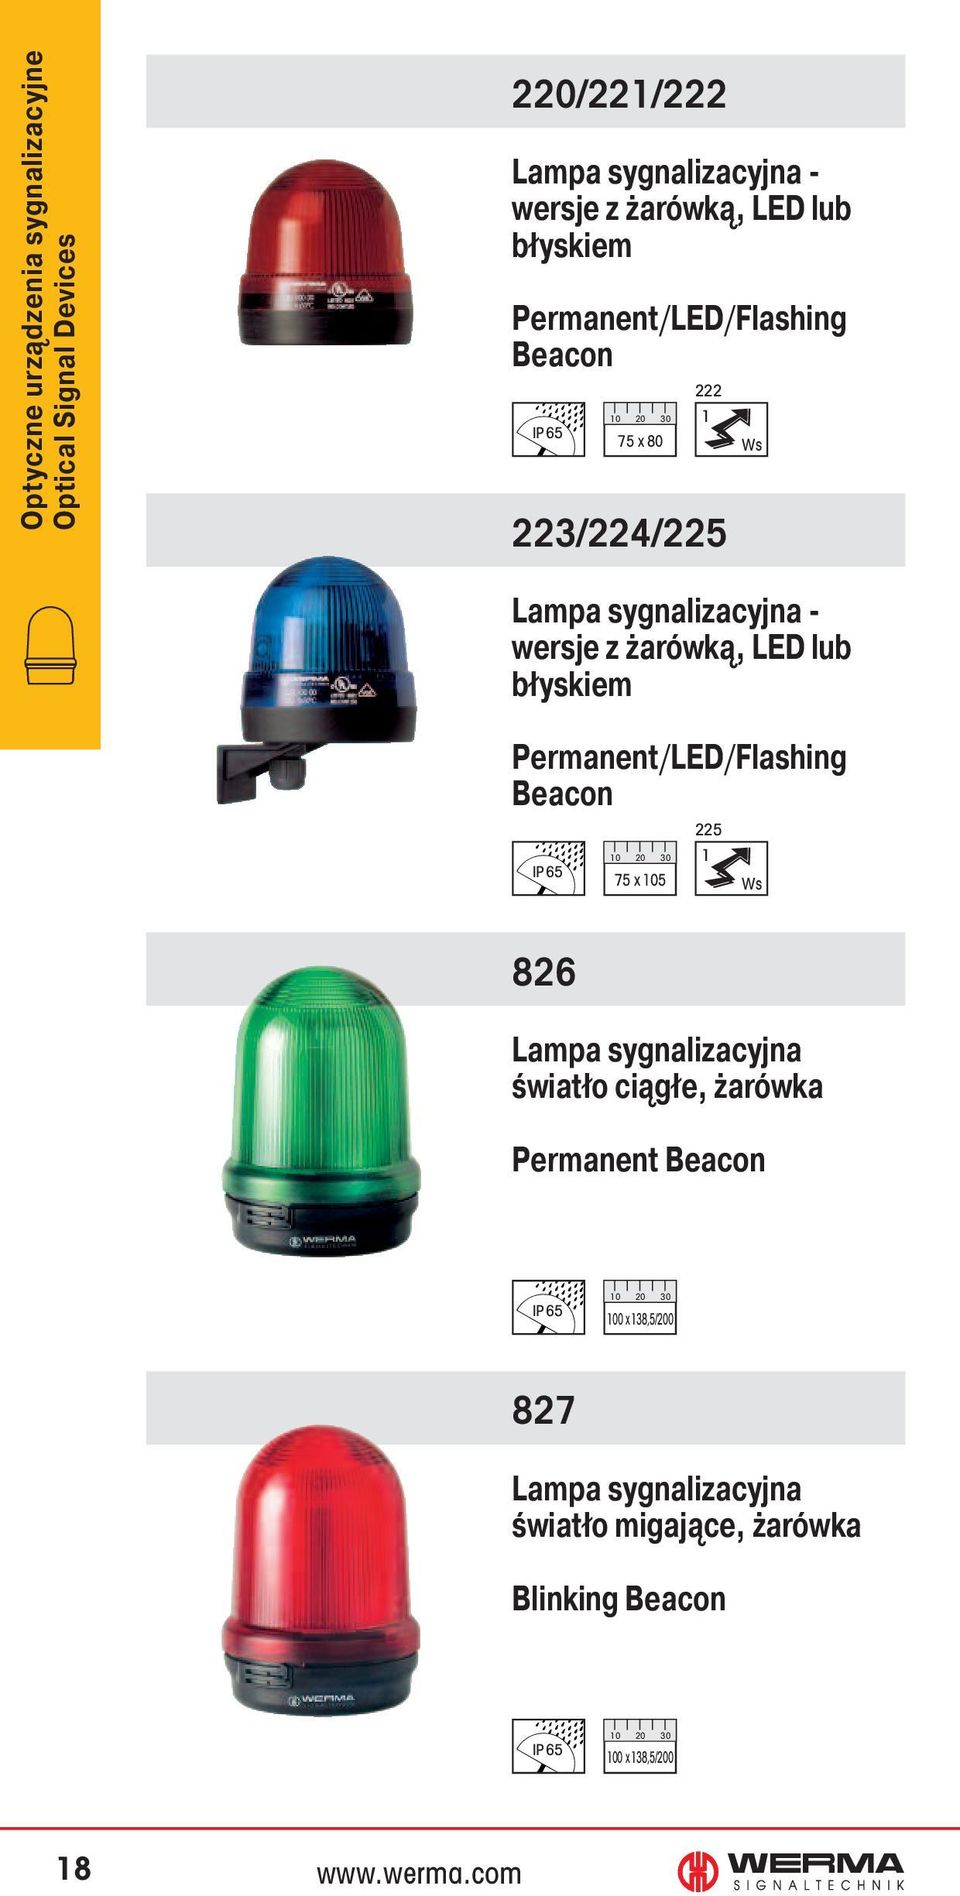 LED lub błyskiem Permanent/LED/Flashing Beacon 75 x 105 225 1 826 Lampa sygnalizacyjna światło ciągłe, żarówka